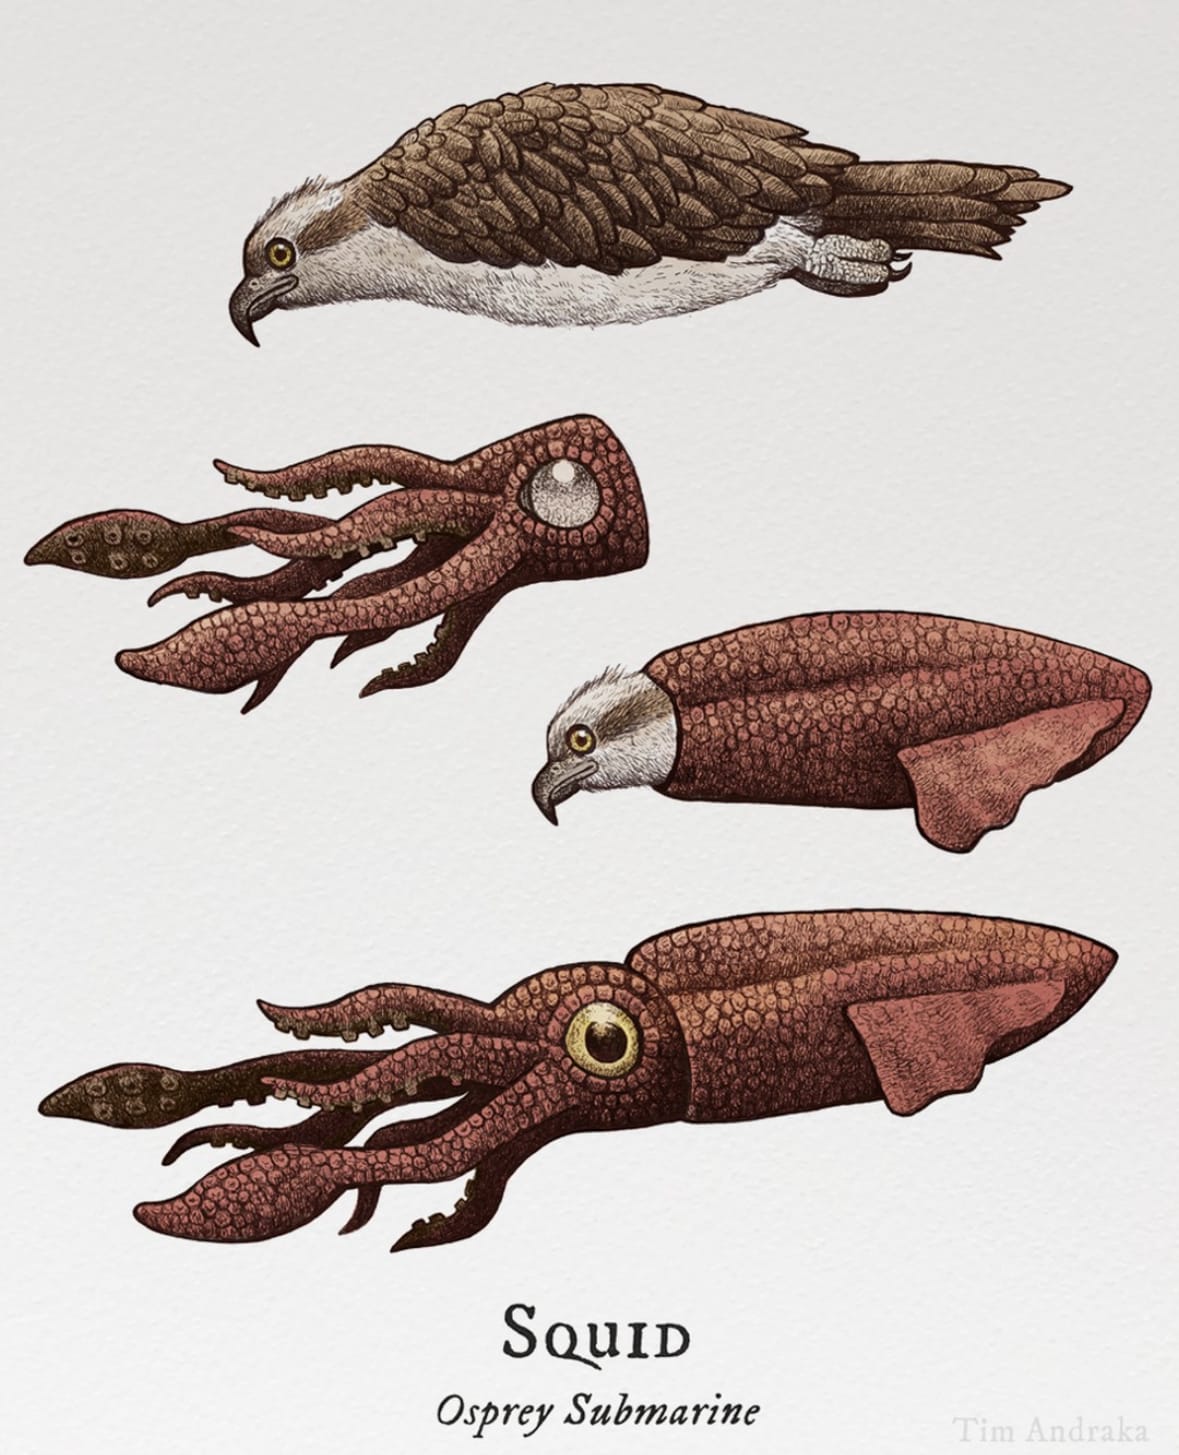 ภาพวาดสัตว์โลกเหนือจริงสุดฮา สารานุกรมภาพวิทยาศาสตร์ ศิลปิน Tim Andraka